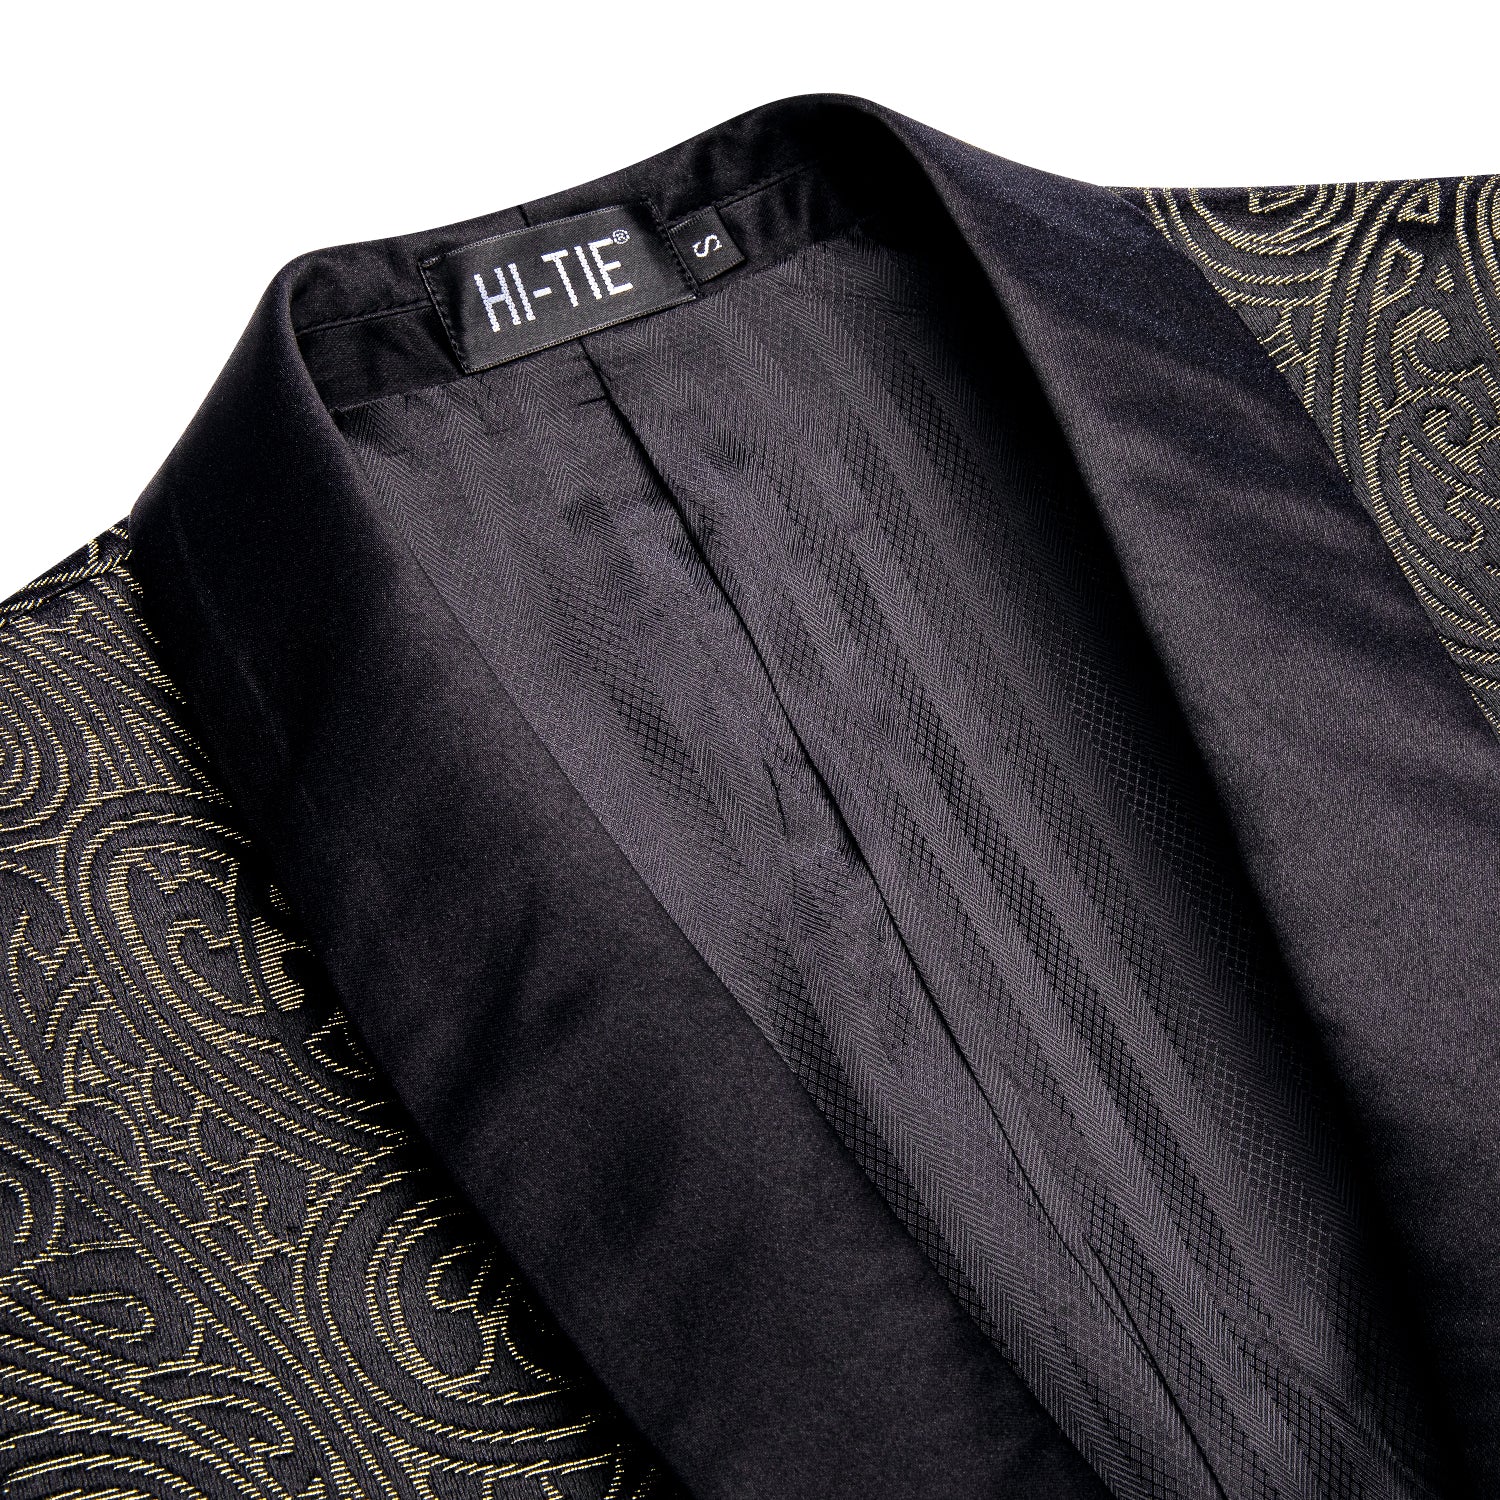 New Luxury Black Champagne Paisley Men's Suit Set